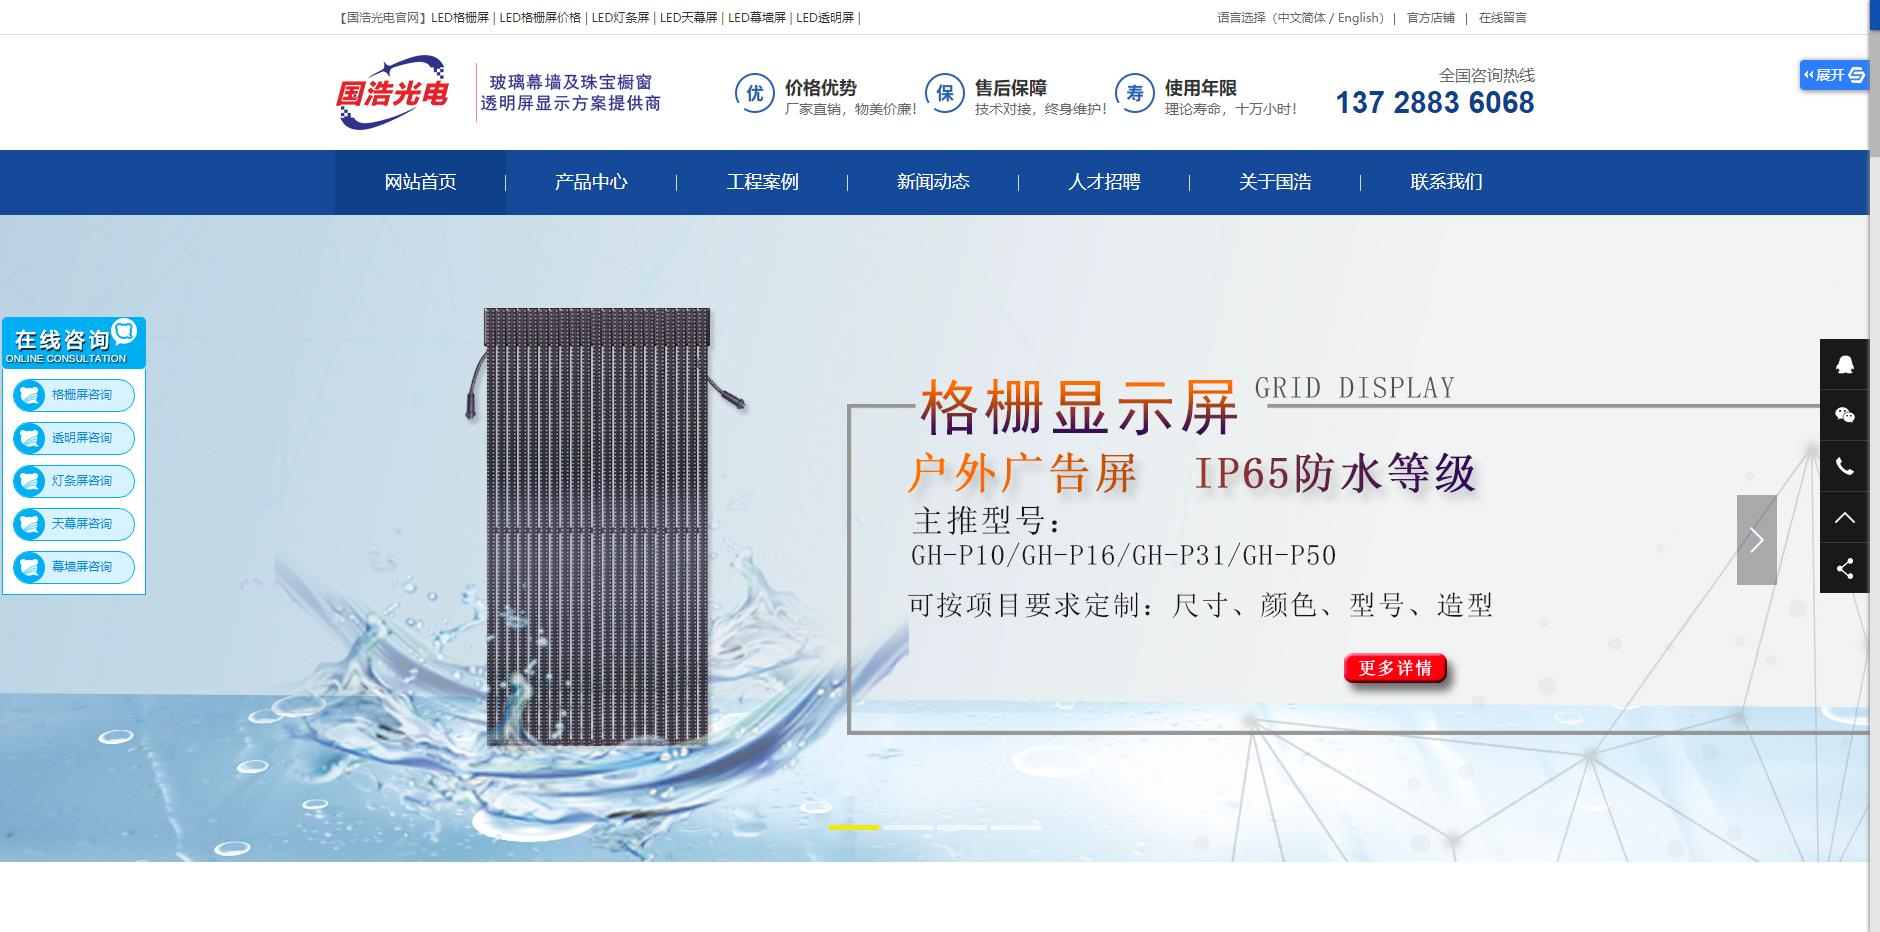 深圳市国浩光电科技有限公司新官网改版上线